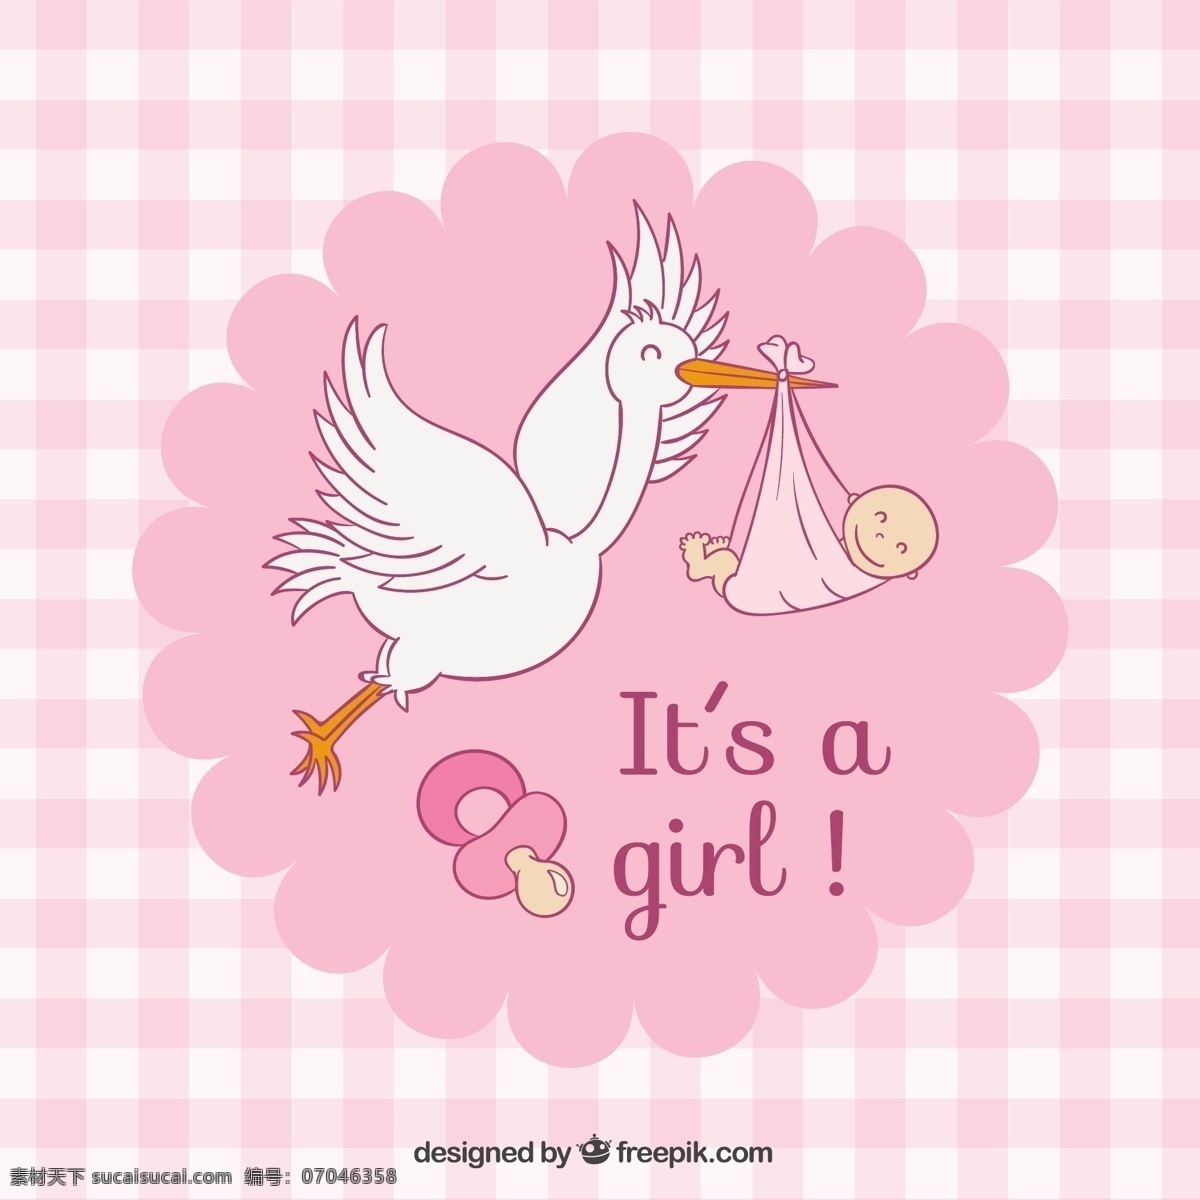 婴儿洗澡卡 宝贝 淋浴 粉红色 庆典 女孩 庆祝 婴儿 出生 查了一下 少女时代